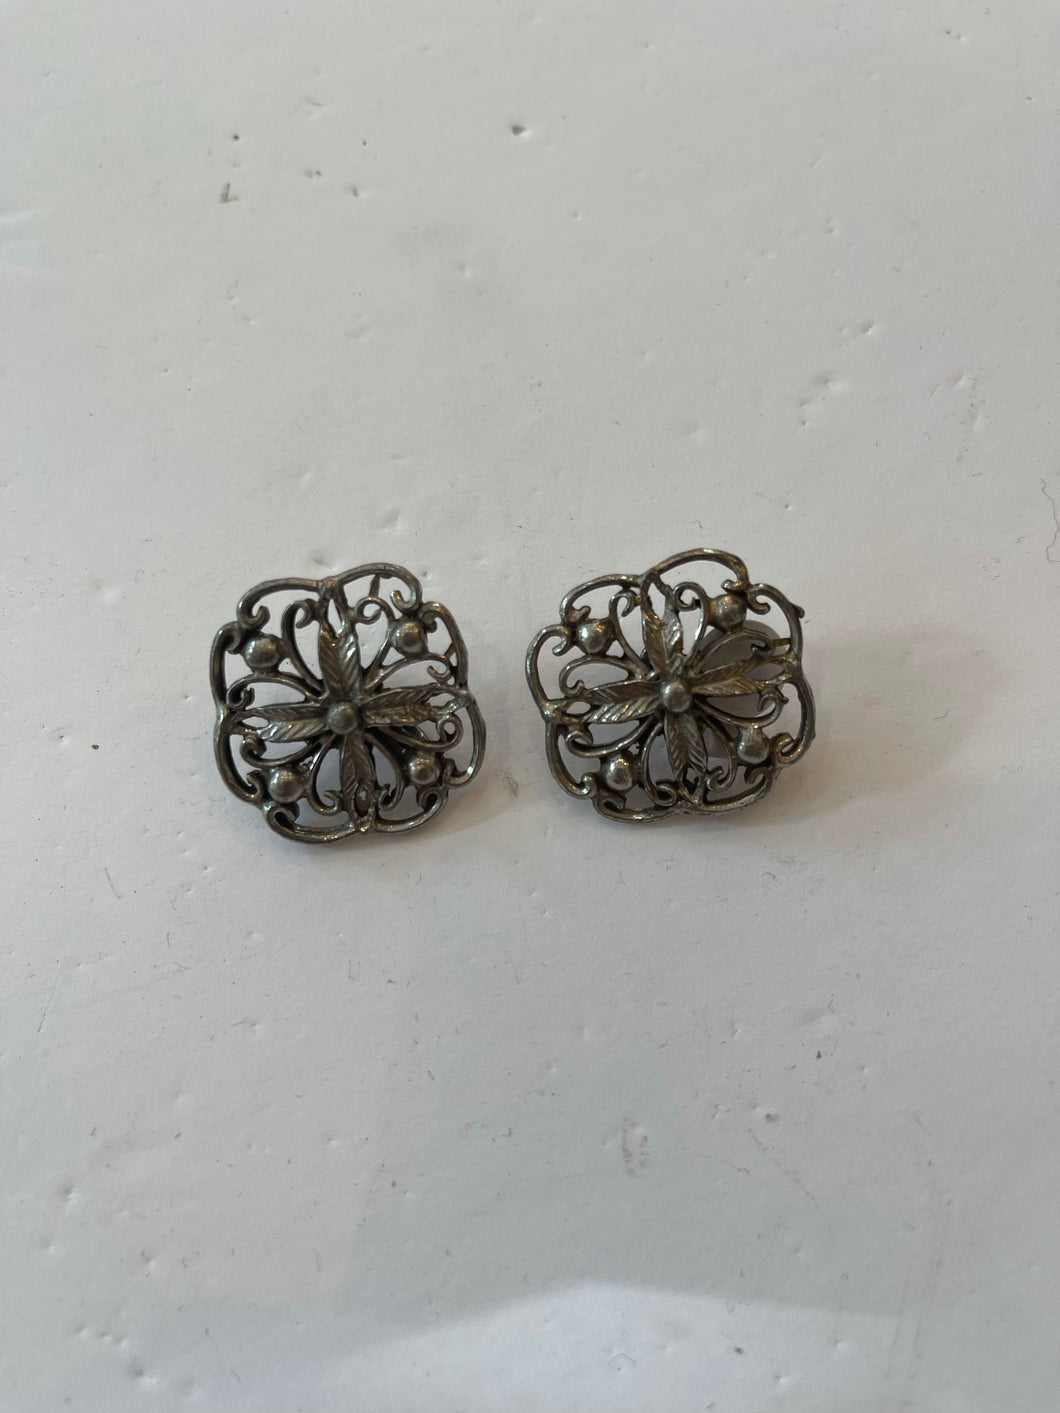 Silver ornate screw-back clip on earrings